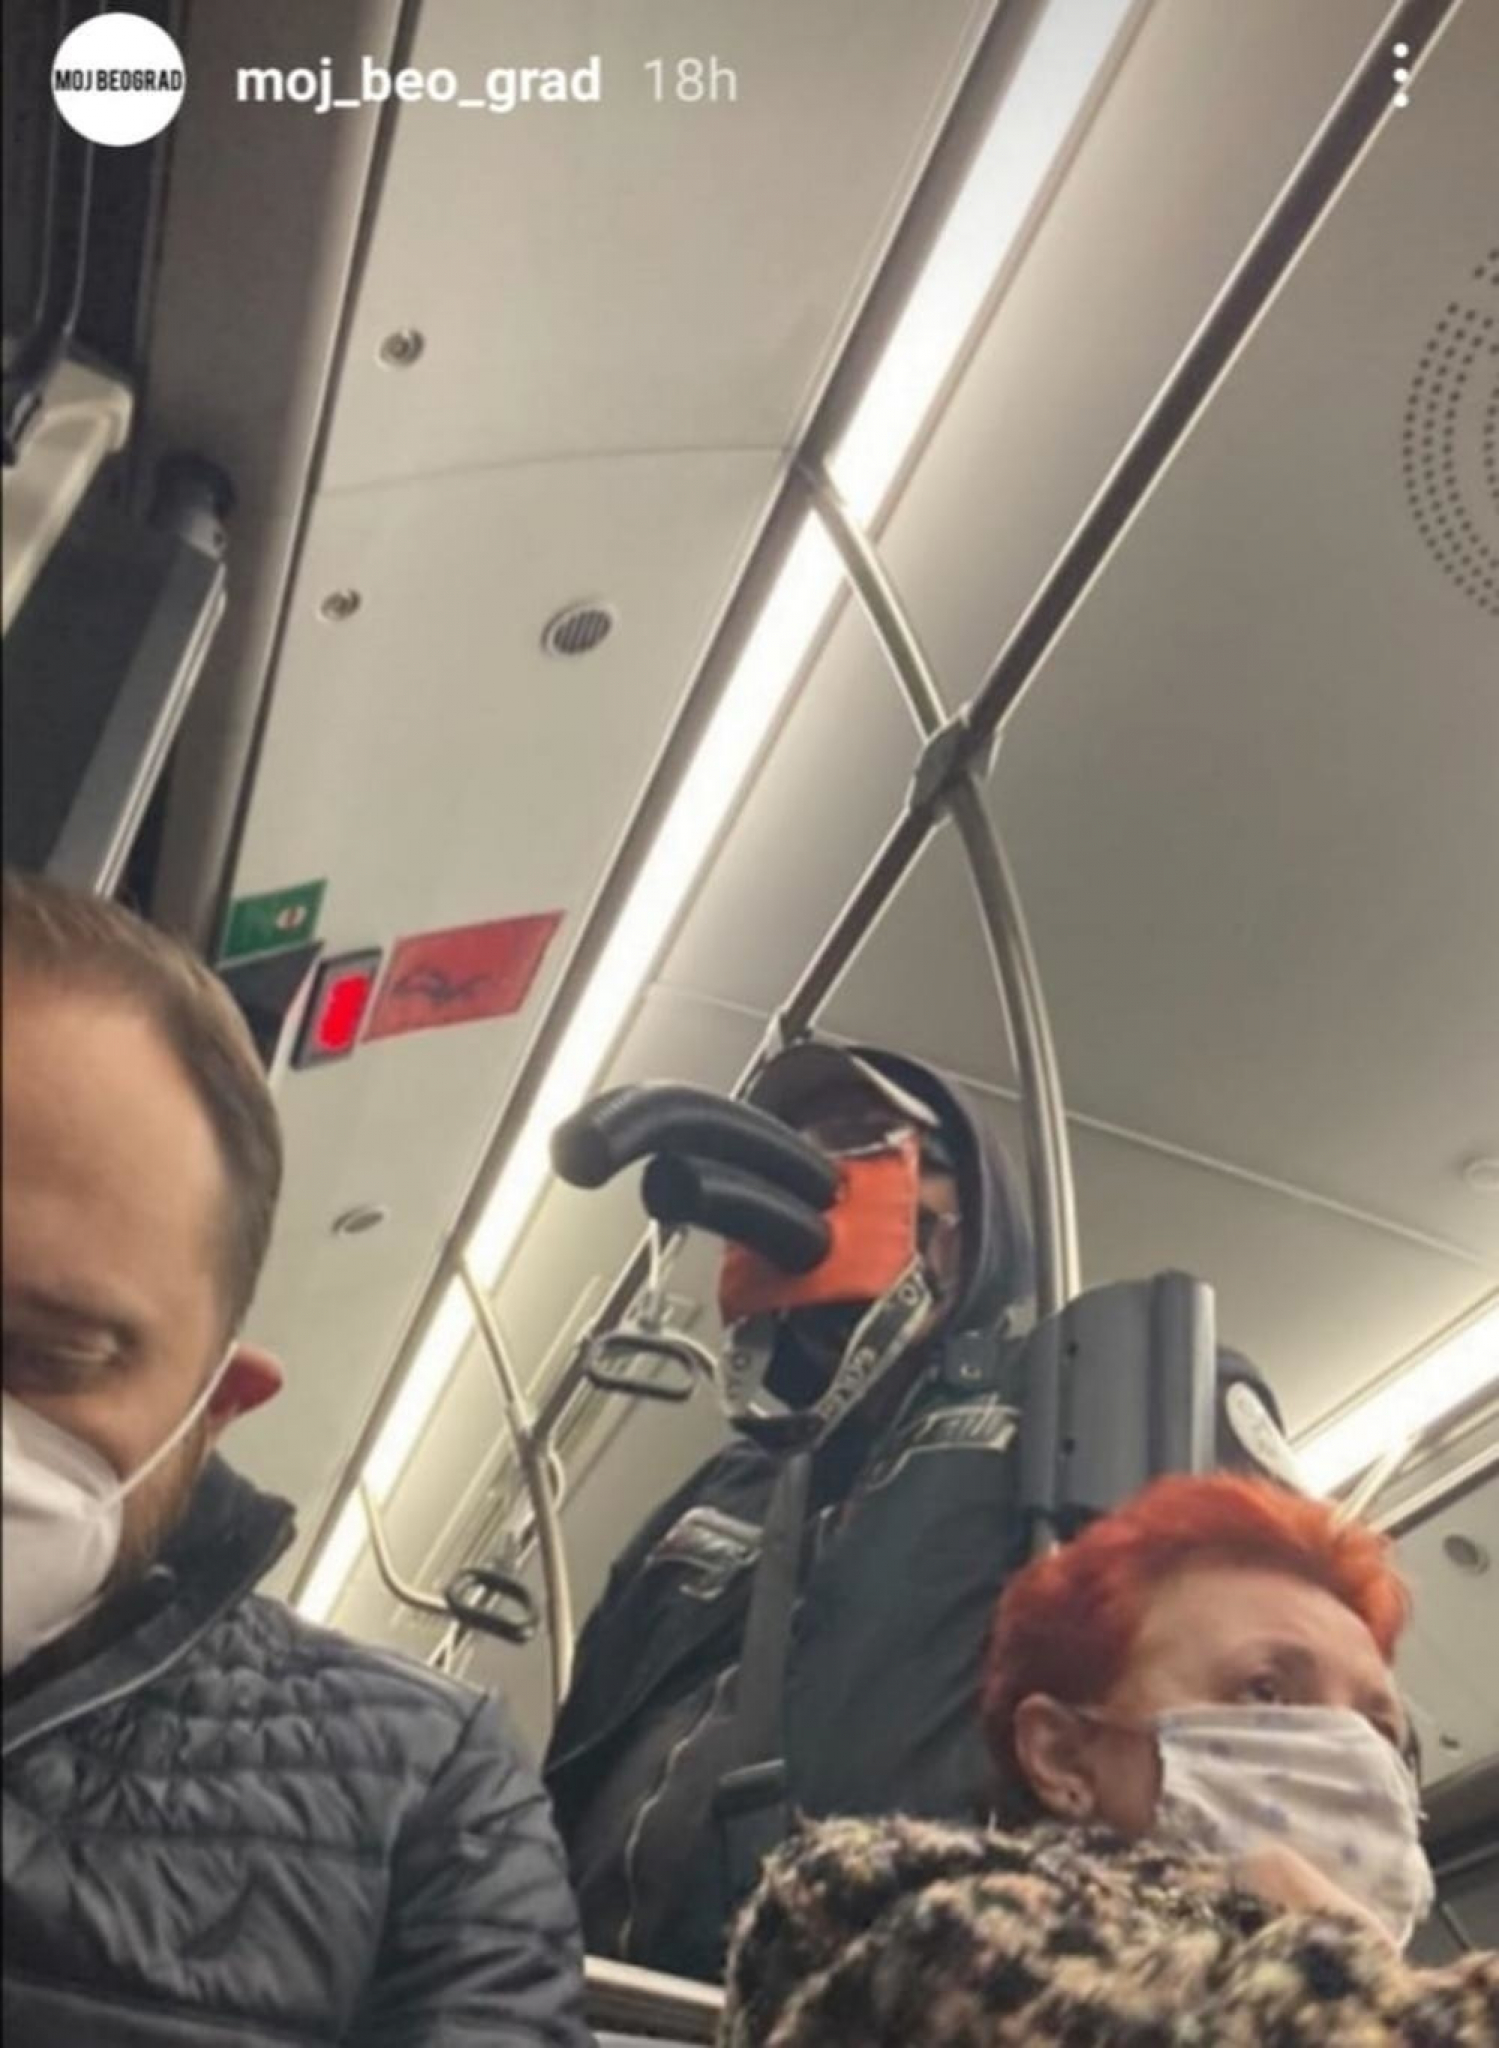 Neobična maska u gradskom prevozu